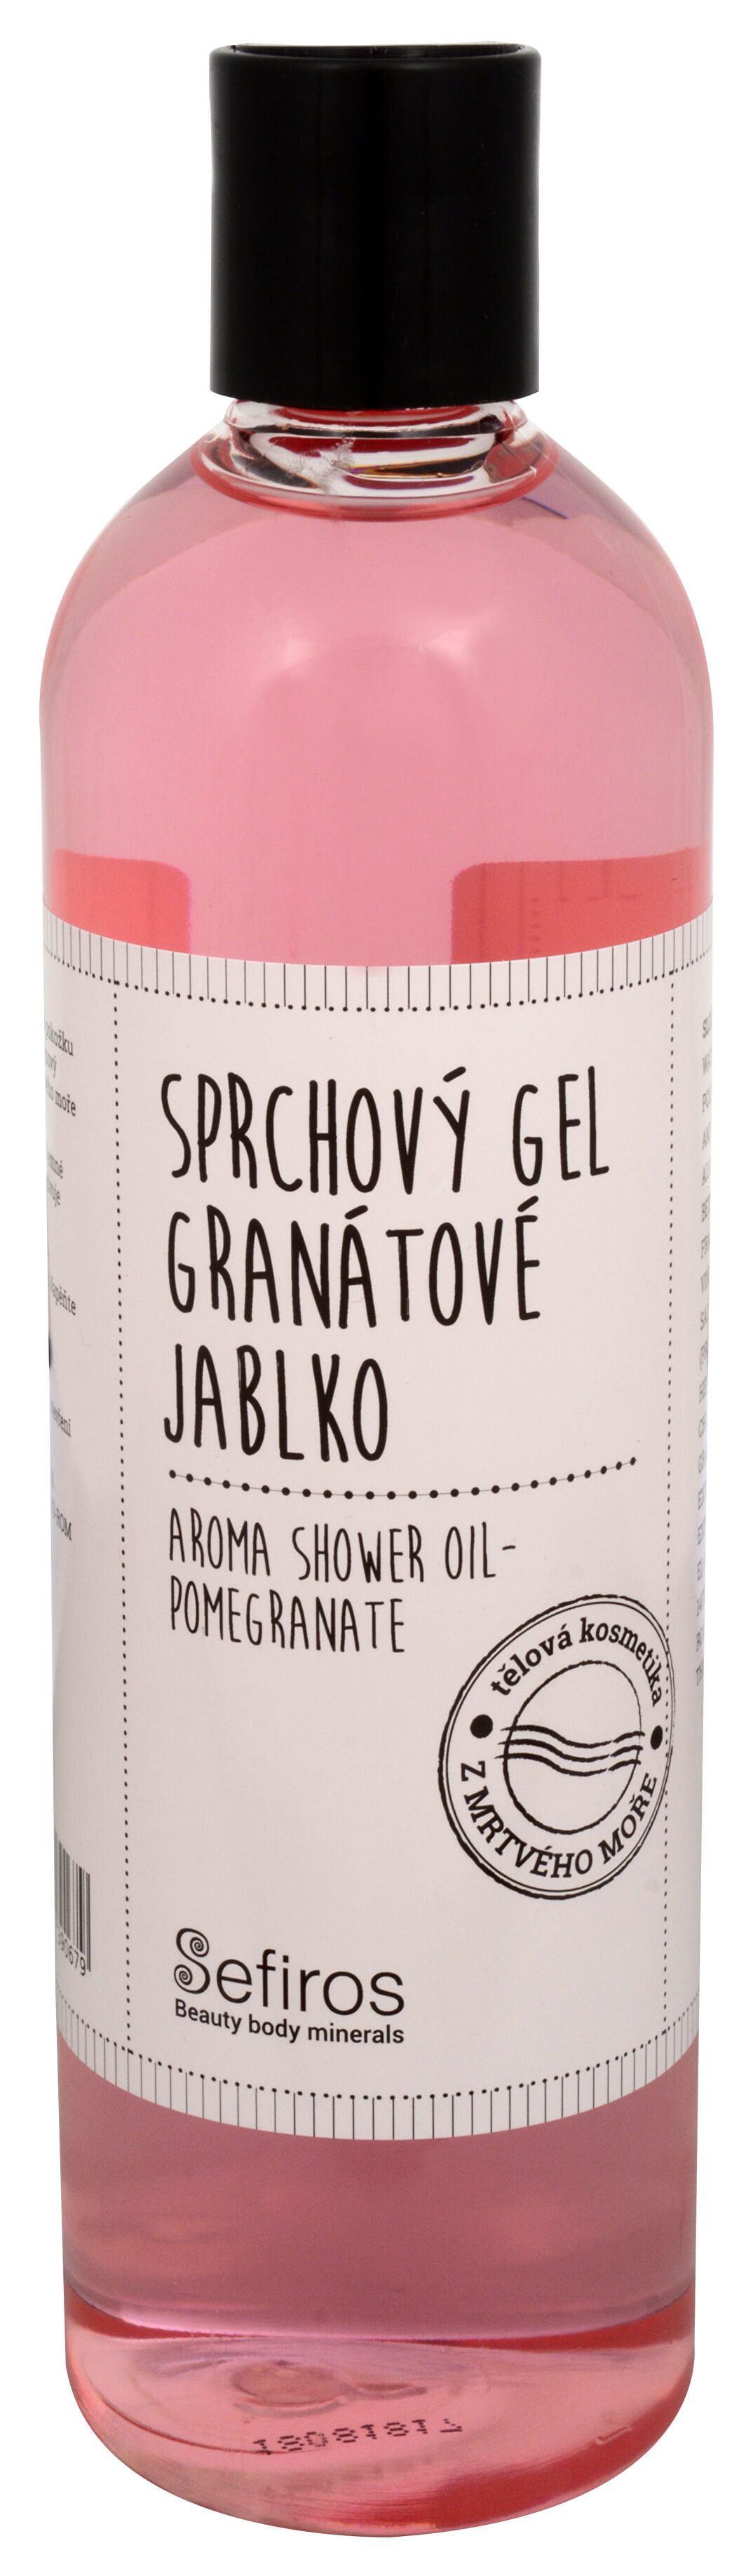 Sefiross Sprchový gel Granátové jablko (Aroma Shower Oil) 400 ml